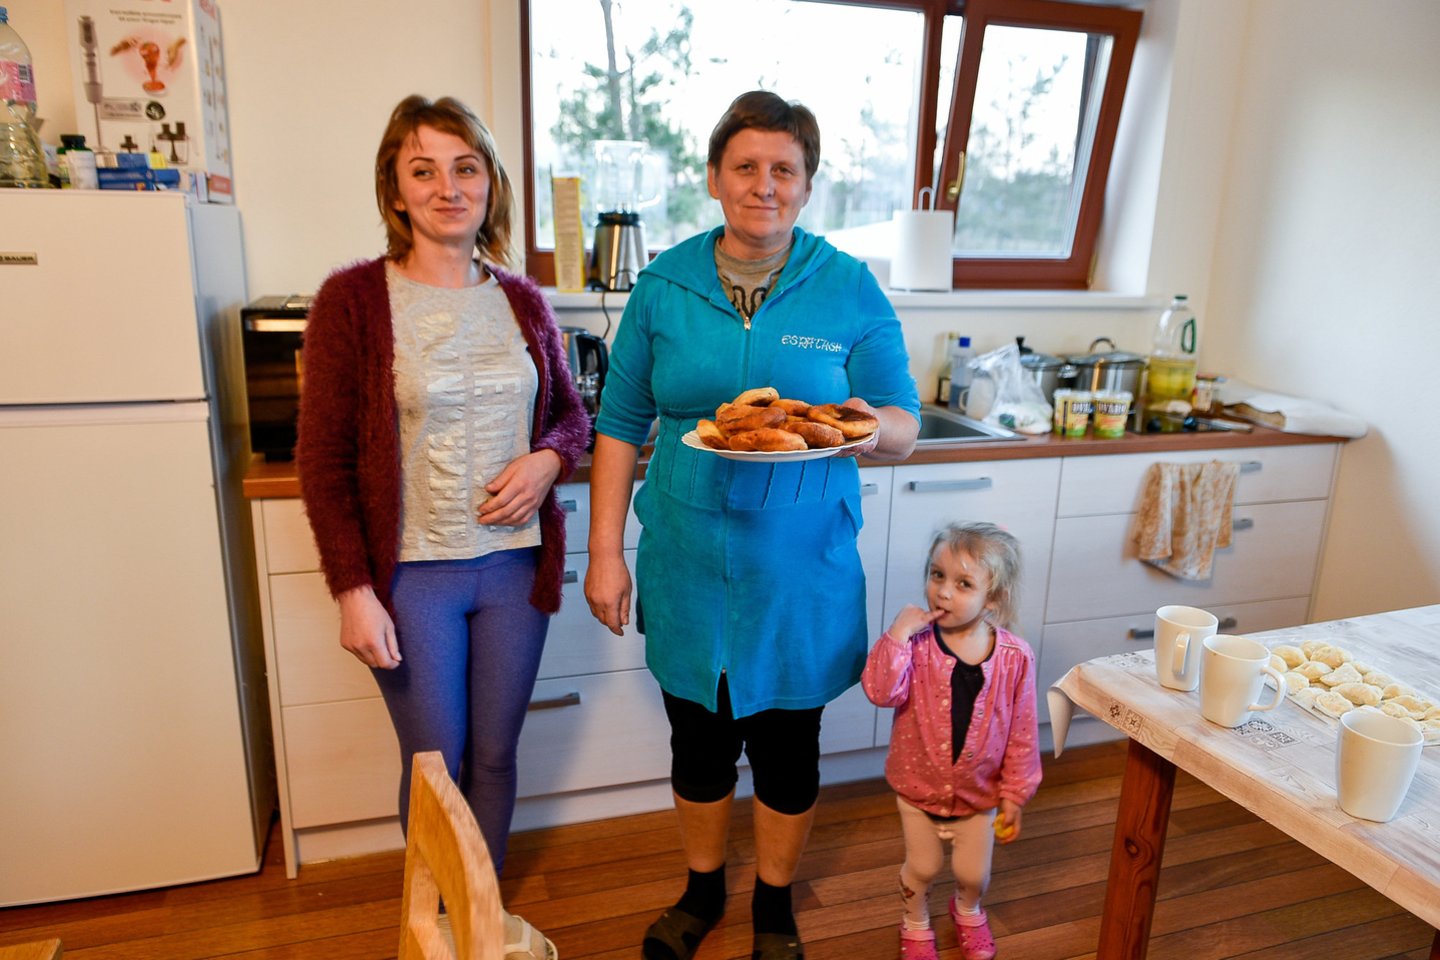  Liudmilos duktė Katia (kairėje) prieš karą buvo slaugytoja. Lietuvoje ji tikisi įsidarbinti pagal specialybę arba prisijungti prie mamos idėjos gaminti ukrainietiškus patiekalus.<br>V.Ščiavinsko nuotr.